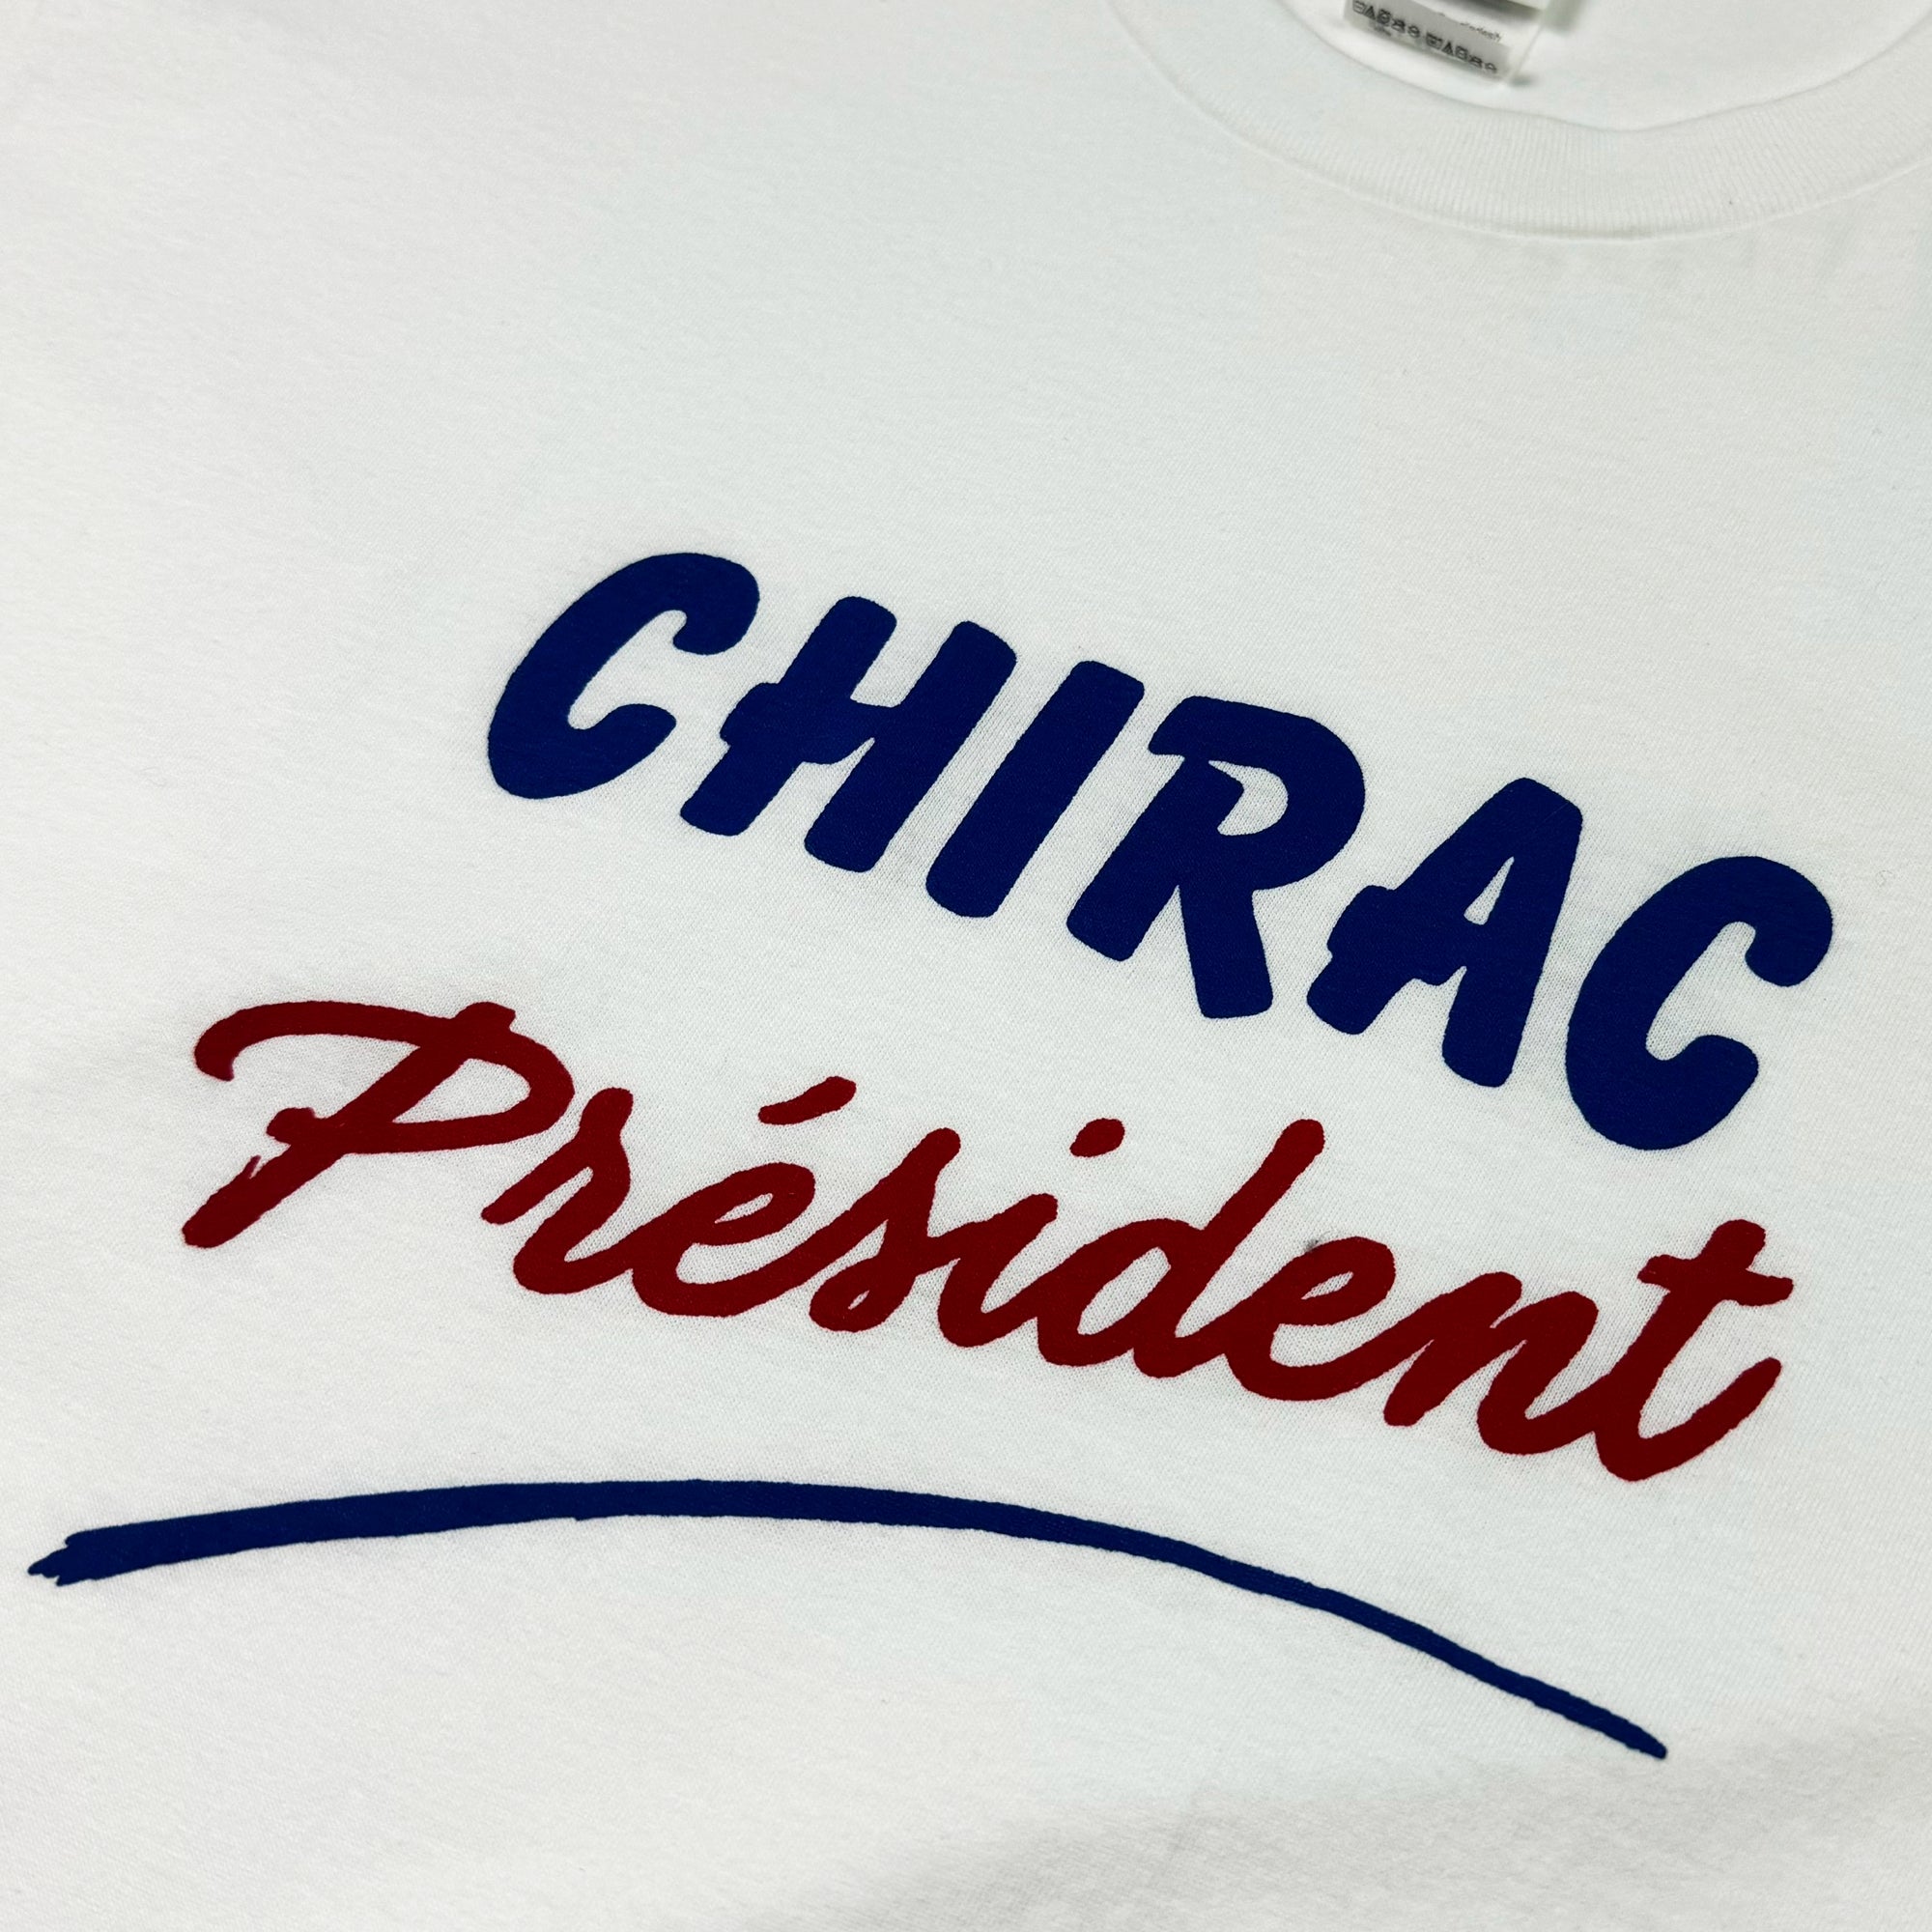 T-shirt - Chirac President - Blanc